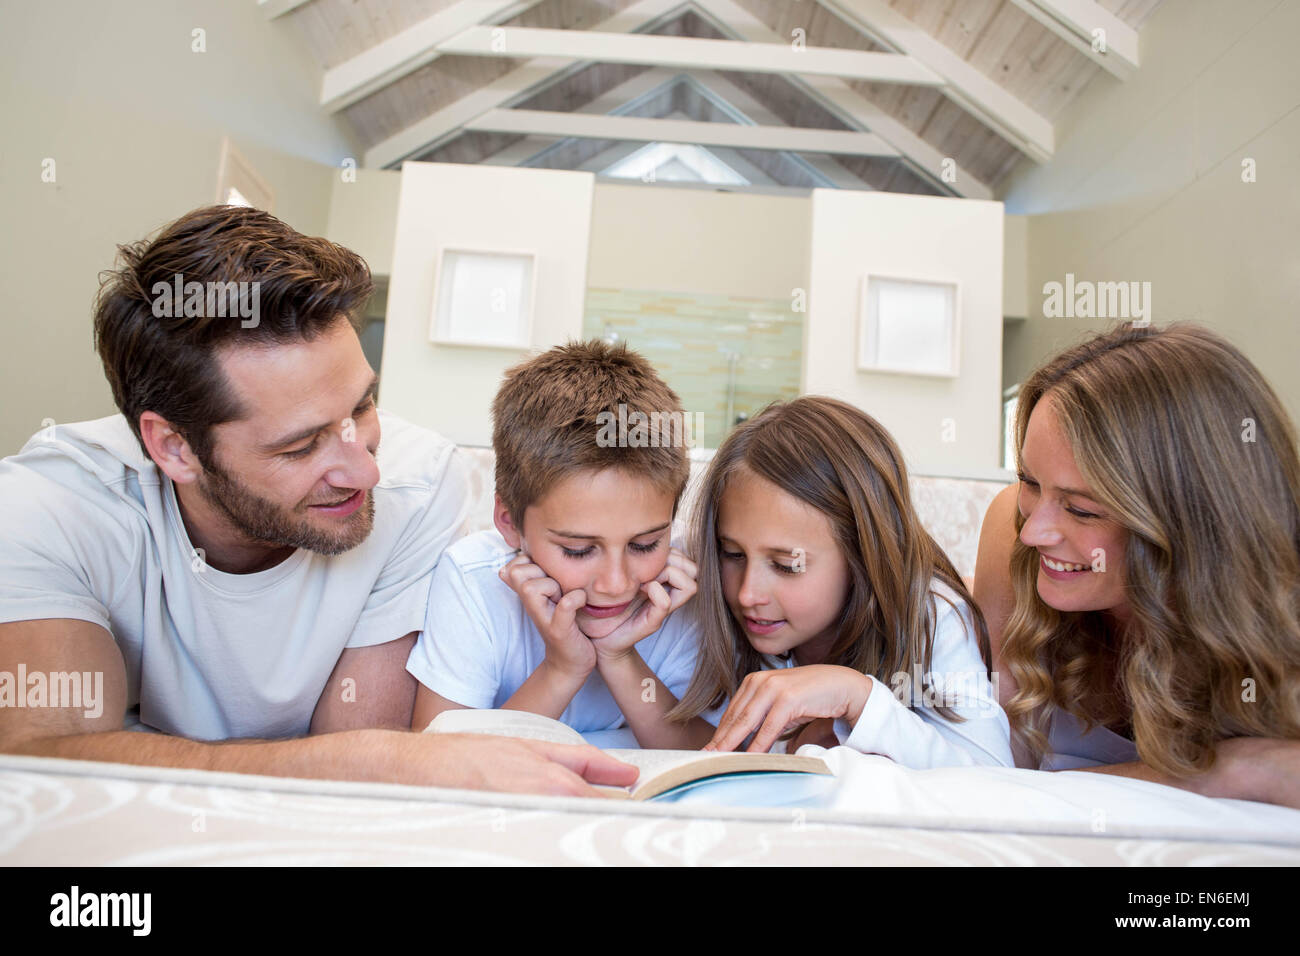 Famille heureuse sur le bed reading book Banque D'Images